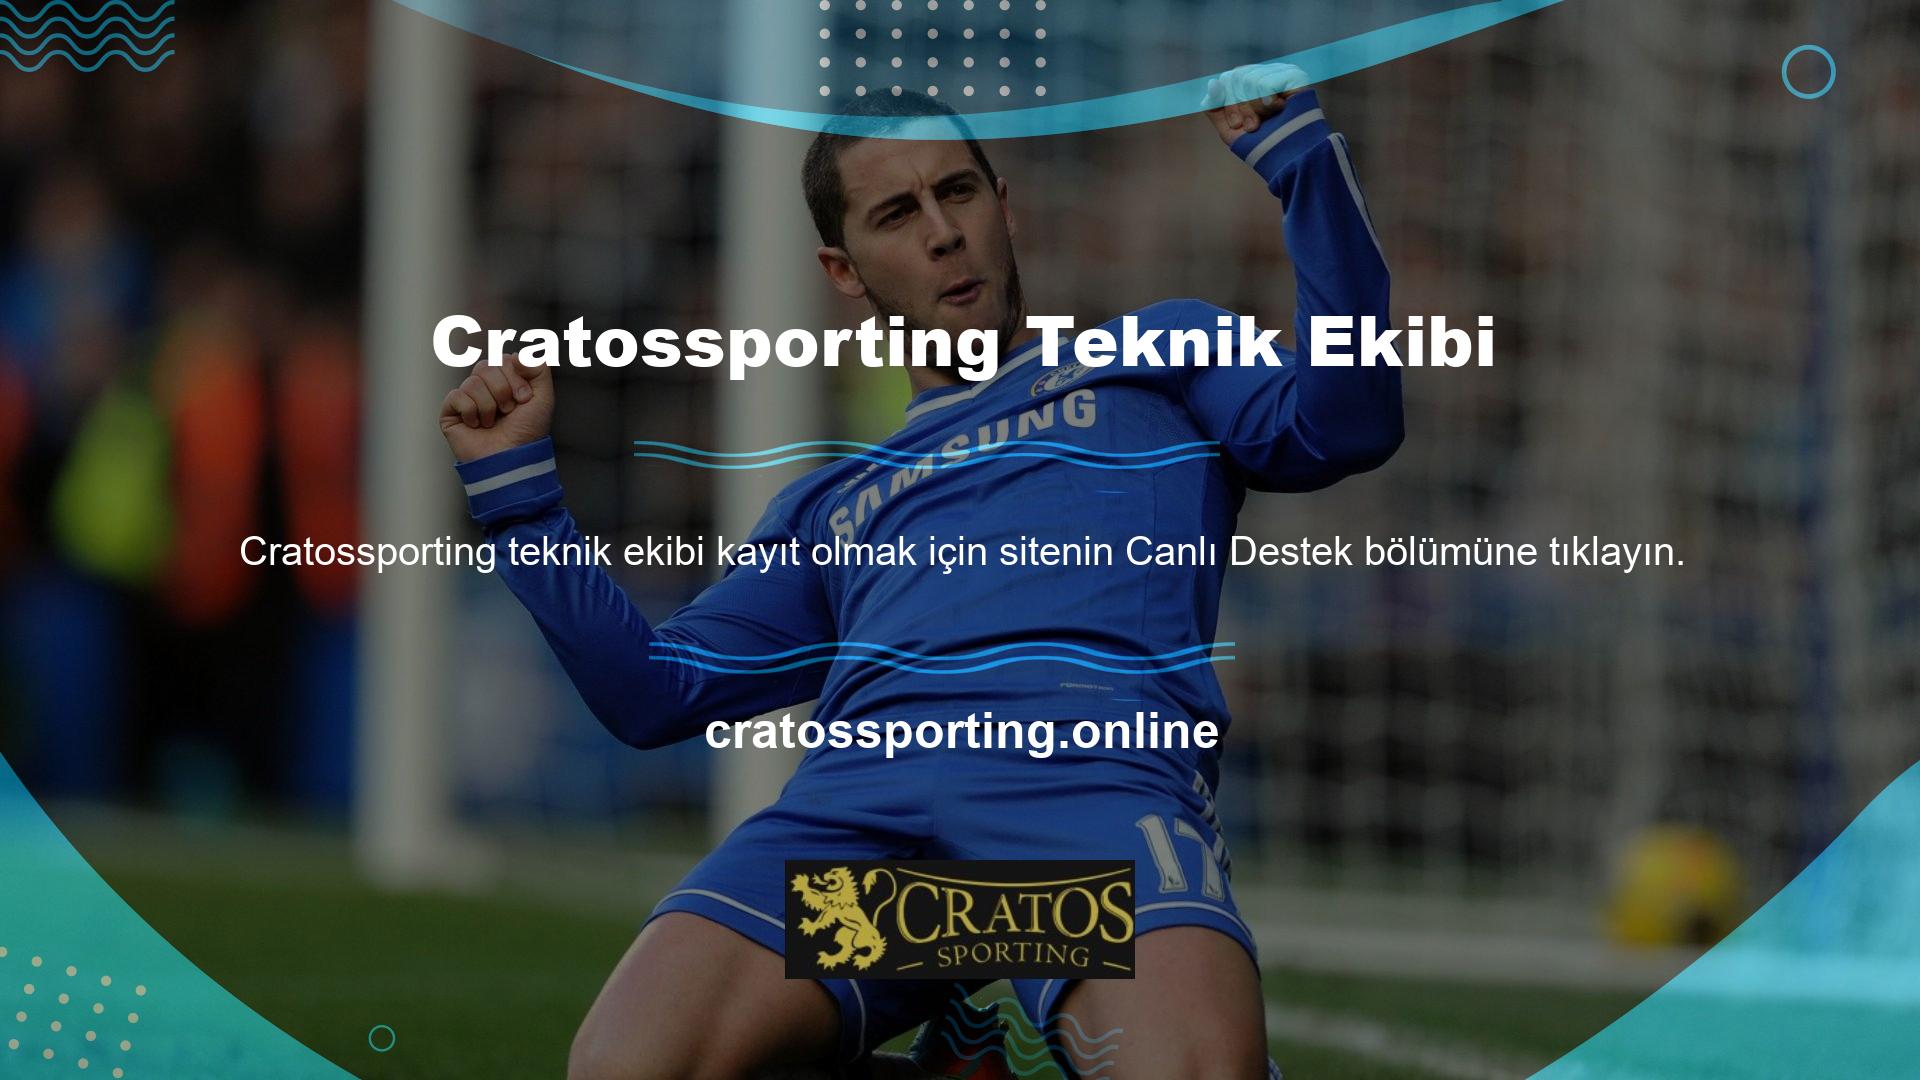 Çevrimiçi bahisçilere hitap eden web sitesinin adı Cratossporting